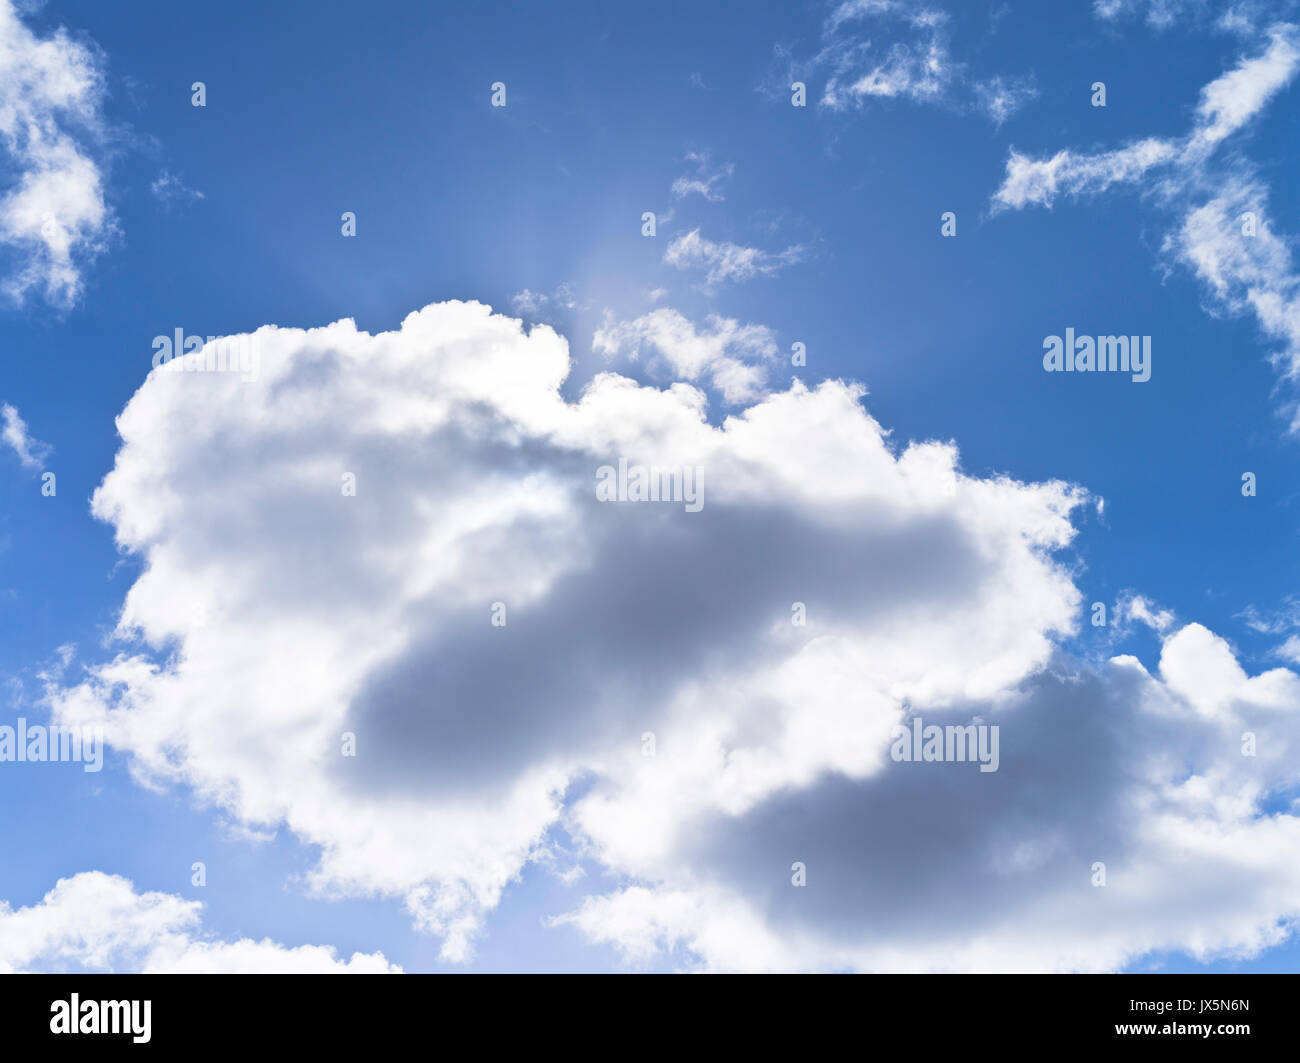 dh White Clouds CIEL Royaume-Uni Backlit nuage bleu ciel blanc gris nuages puffy moelleux nuage jour Banque D'Images